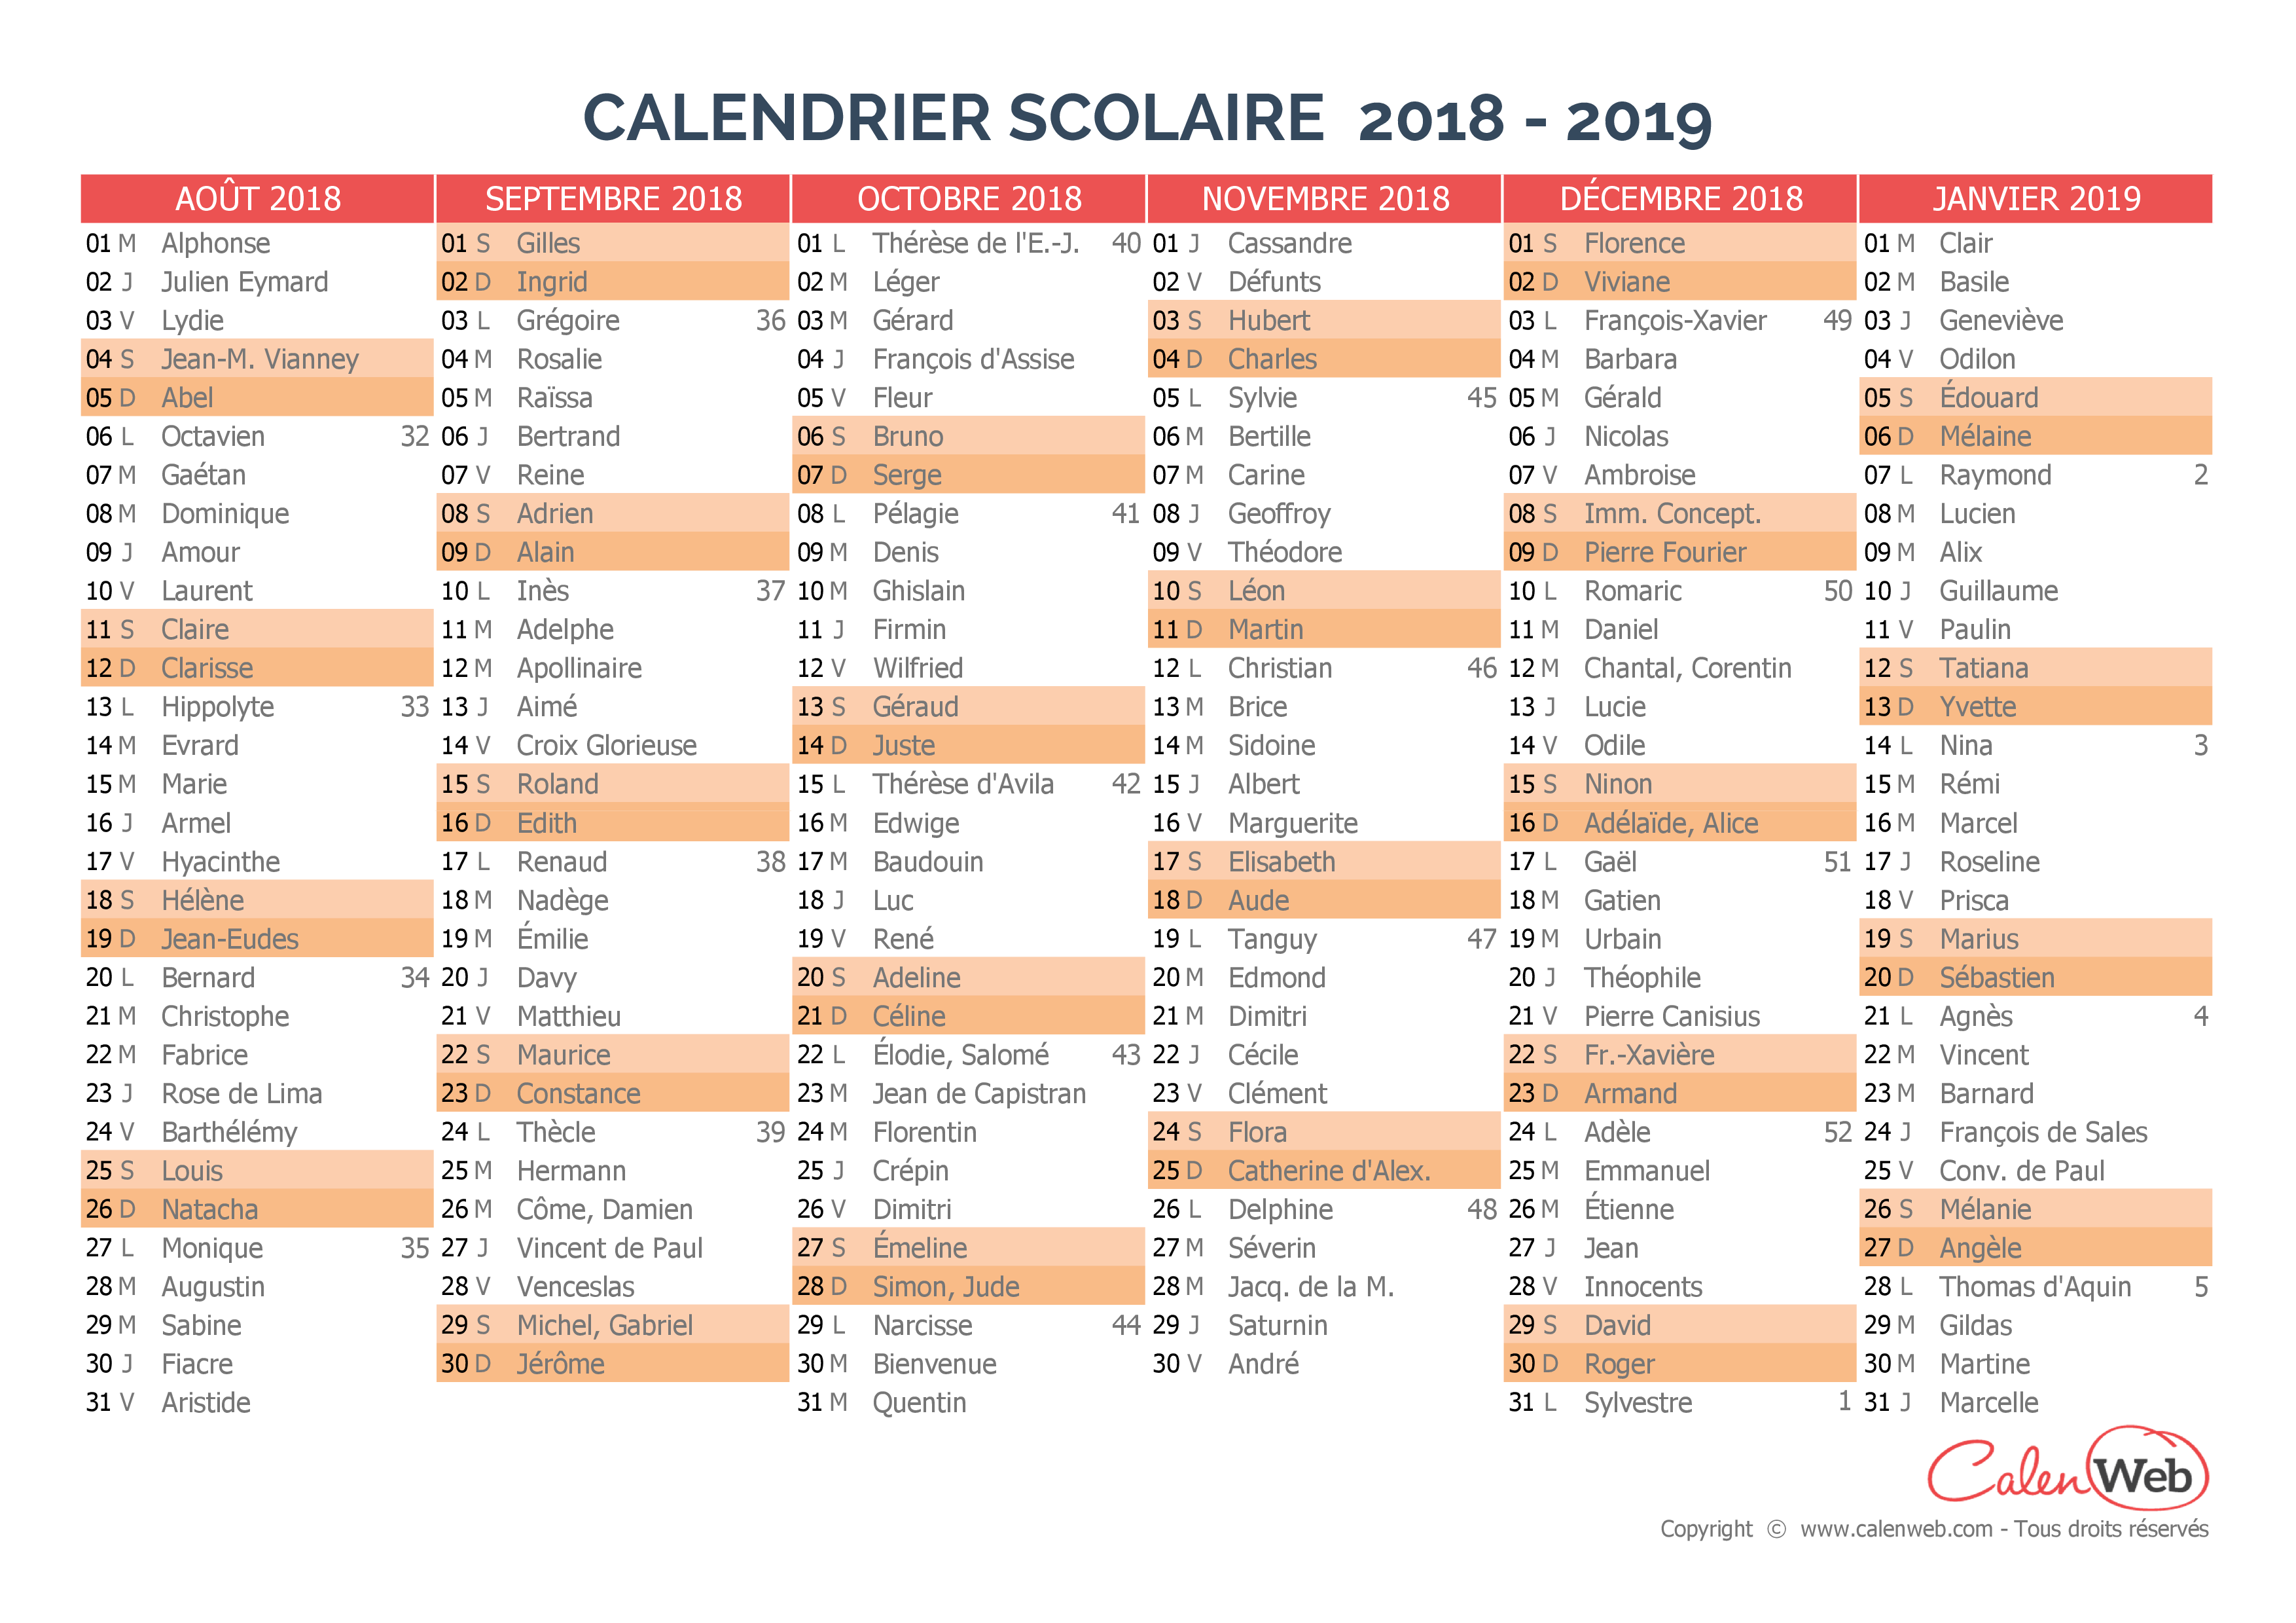 Calendriers 2018 2019 Calendrier Scolaire Calendrier 2018 Calendriers